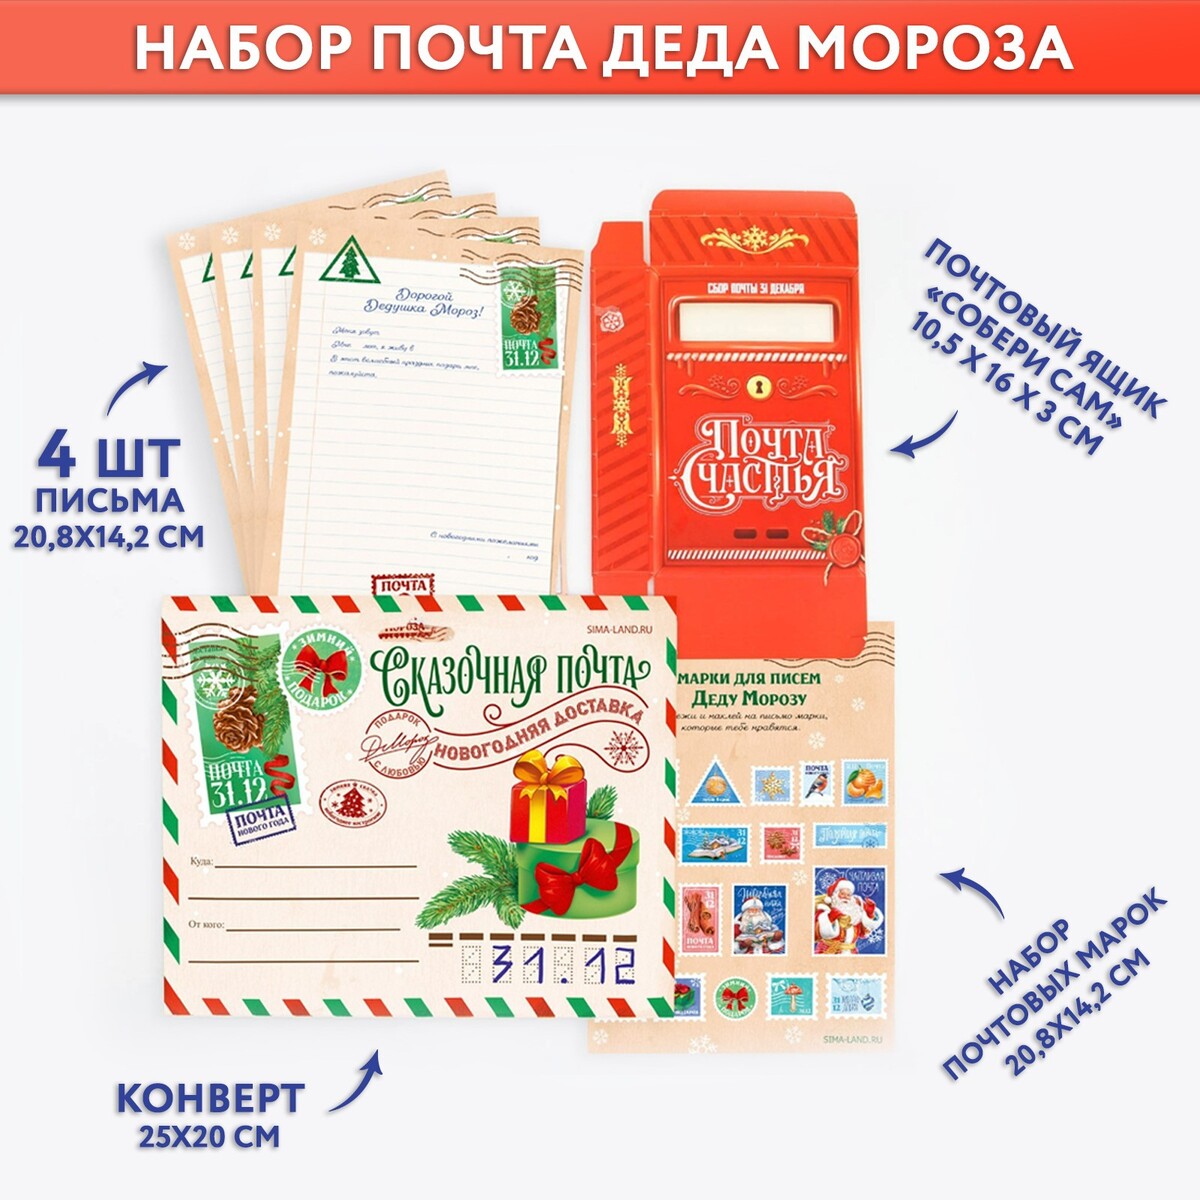 Набор почта деда мороза: почтовый ящик, письма (4шт.), марки письма бодлер